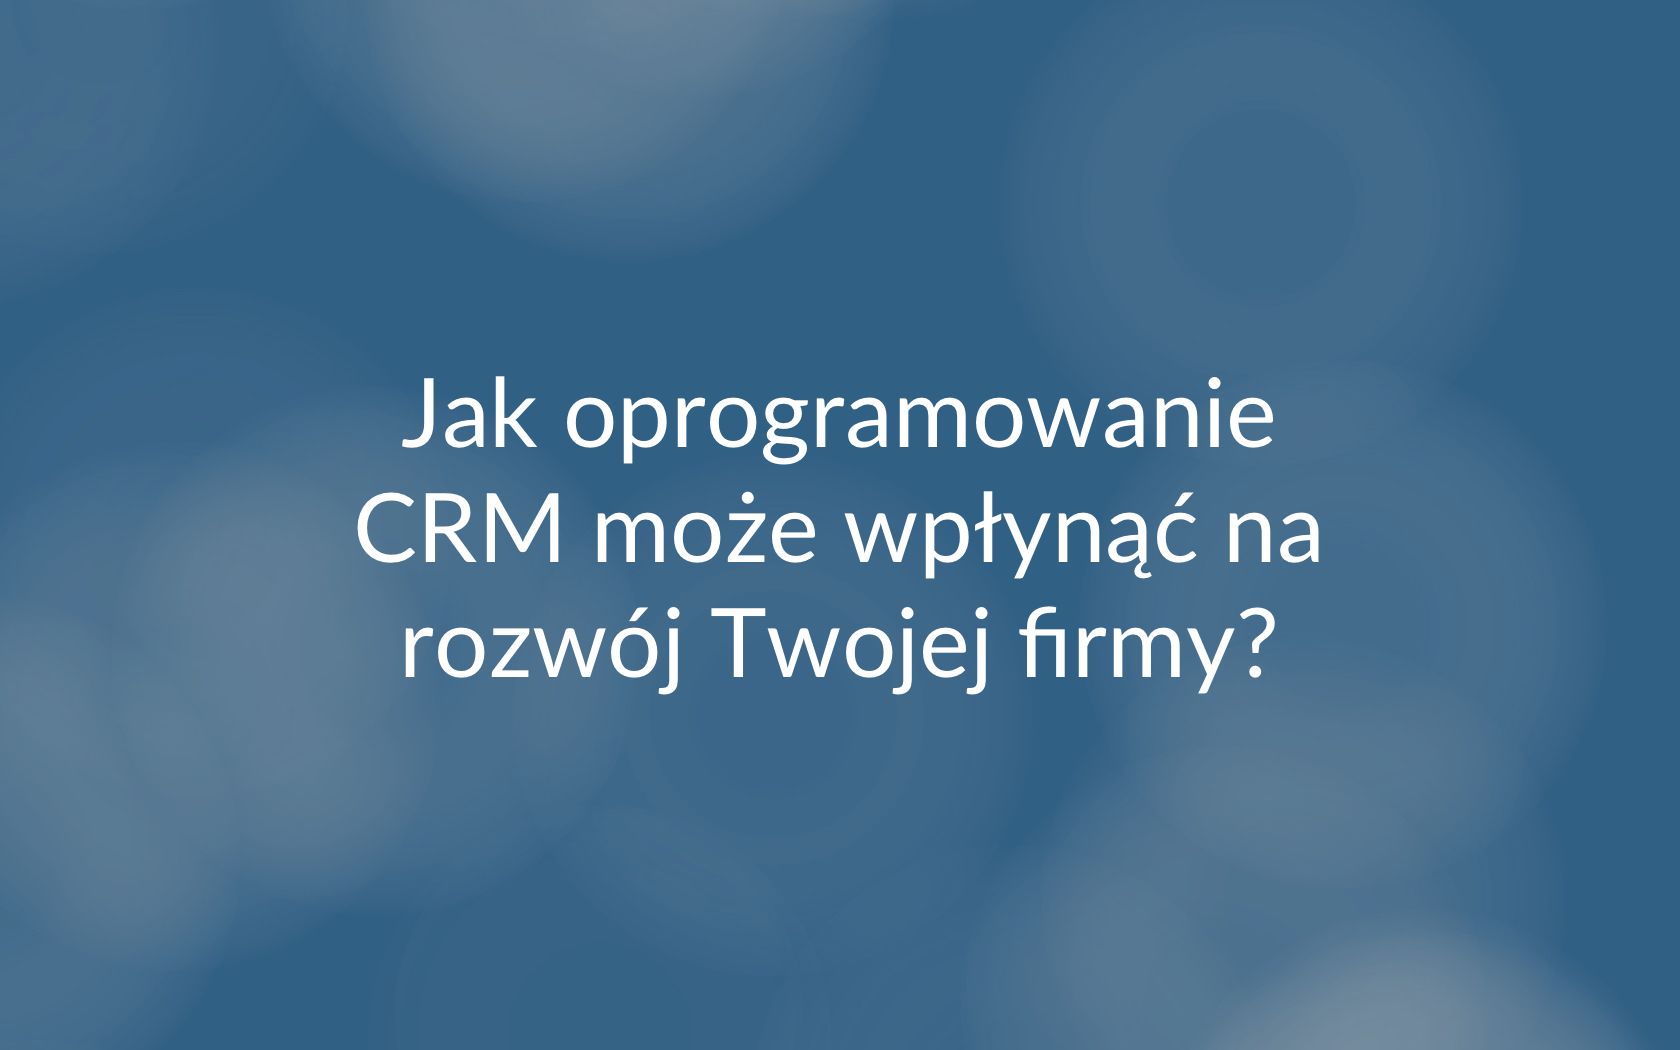 Oprogramowanie CRM